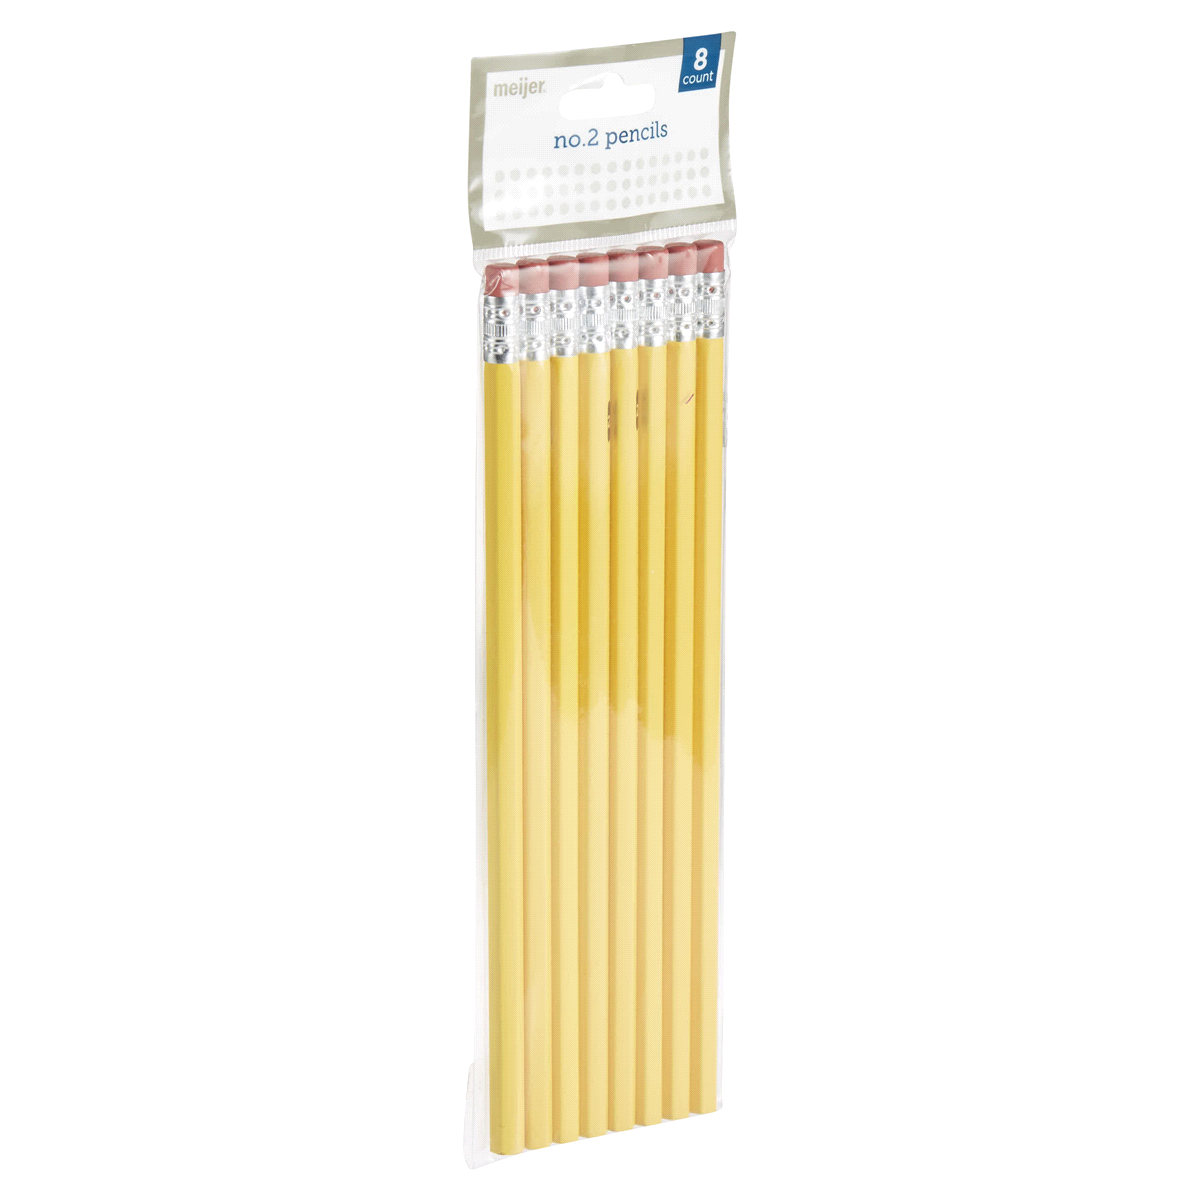 slide 5 of 29, Meijer No.2 Yellow Pencils, 8 ct